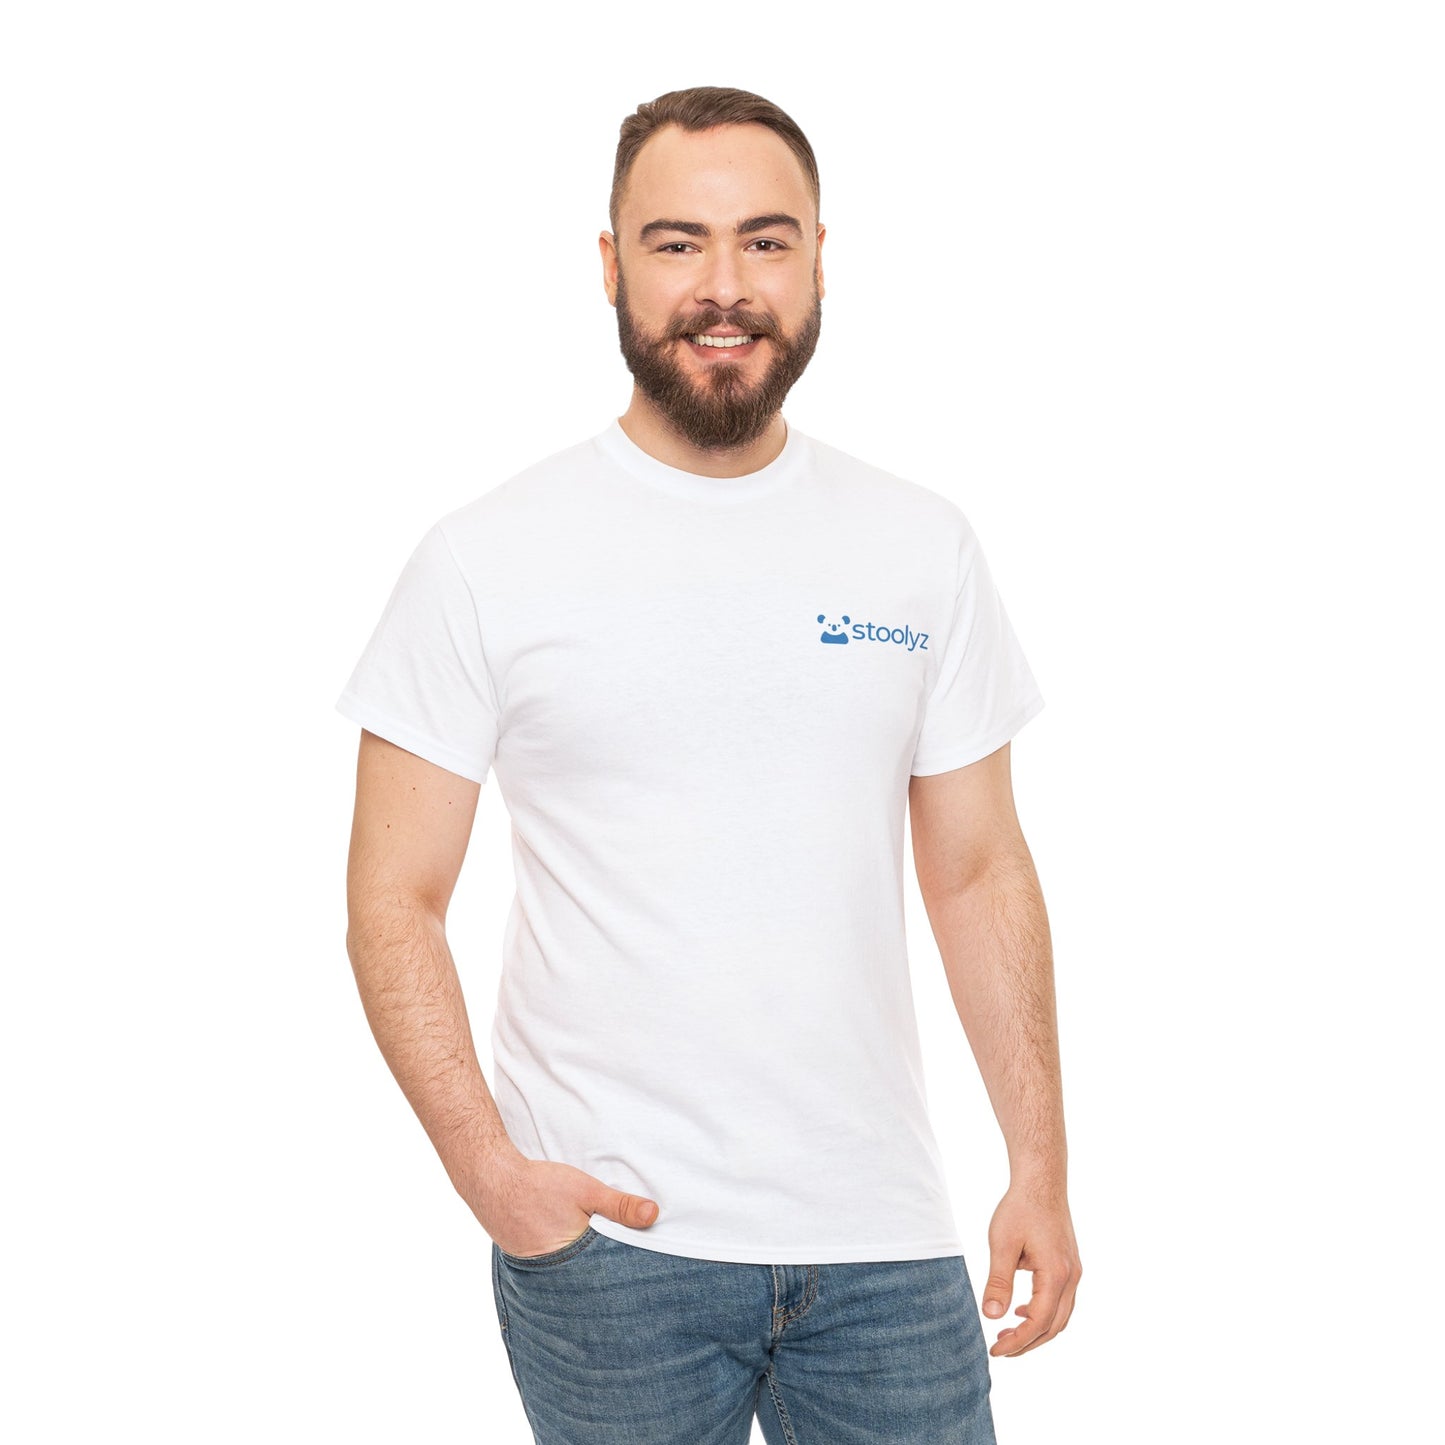 Stoolyz Unisex T-Shirt